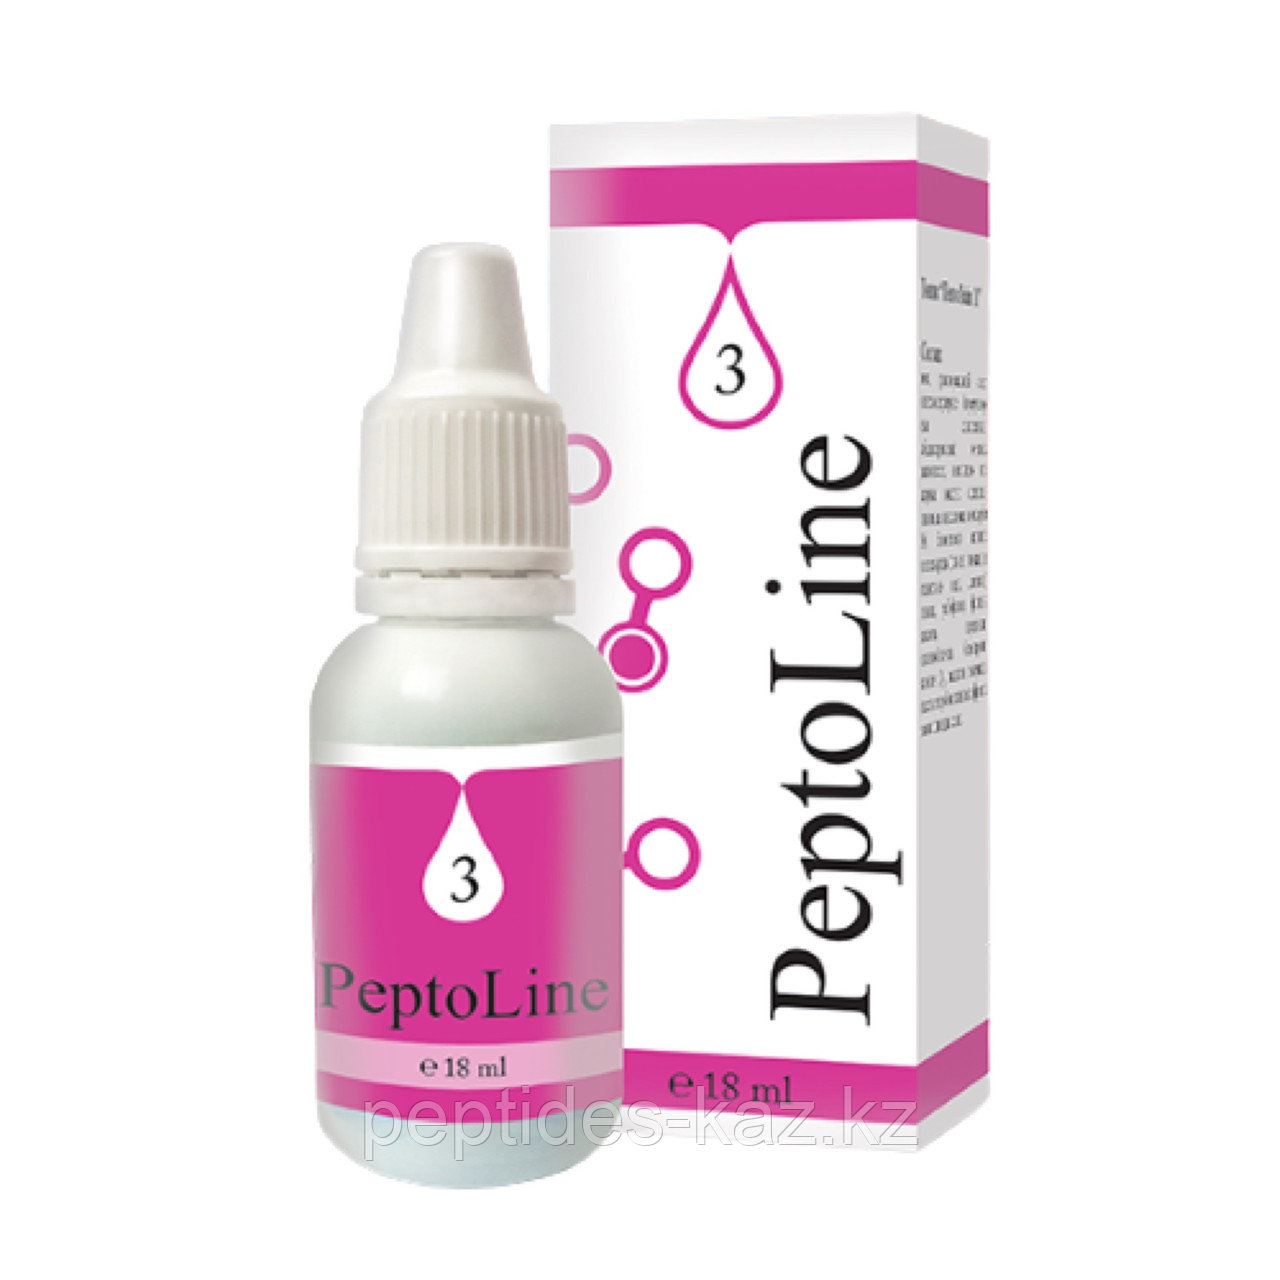 PeptoLine 3 для сердечно-сосудистой системы, пептидный комплекс 18 мл